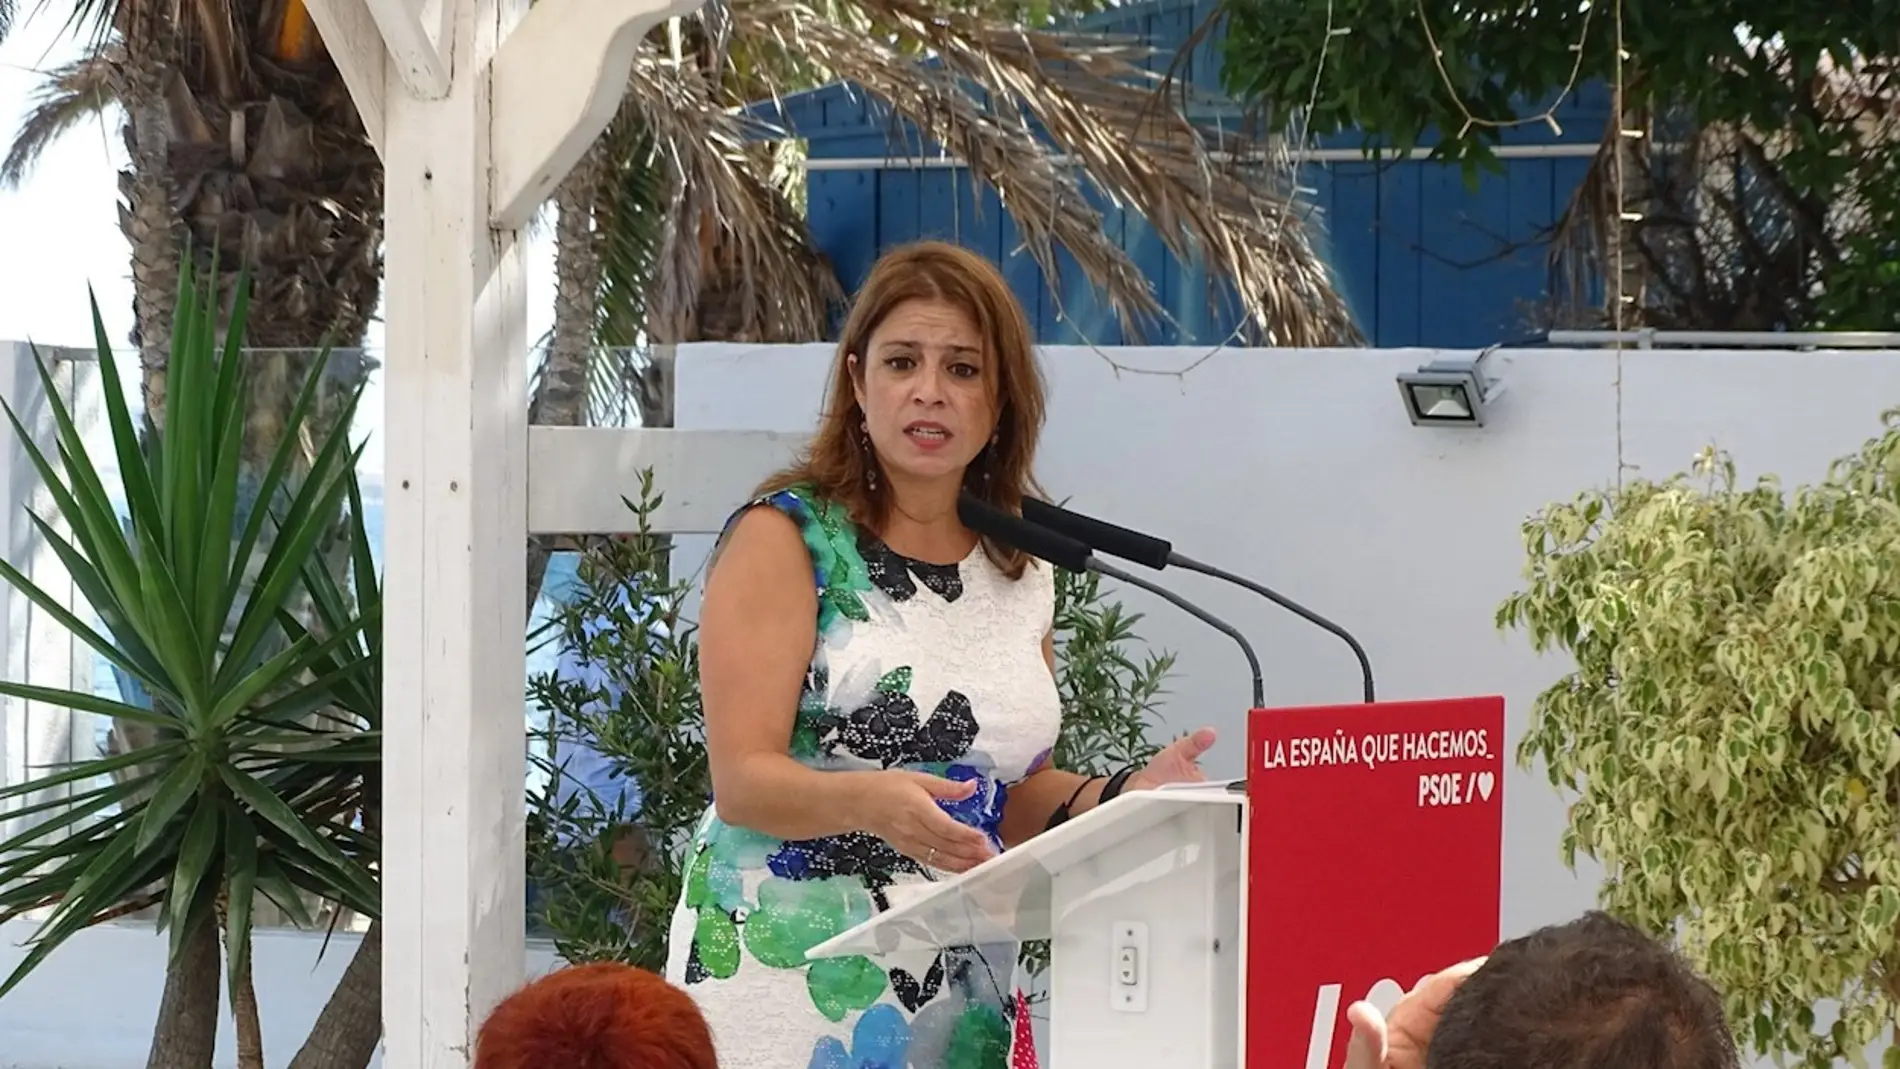  La vicesecretaria general del PSOE, Adriana Lastra durante un acto.